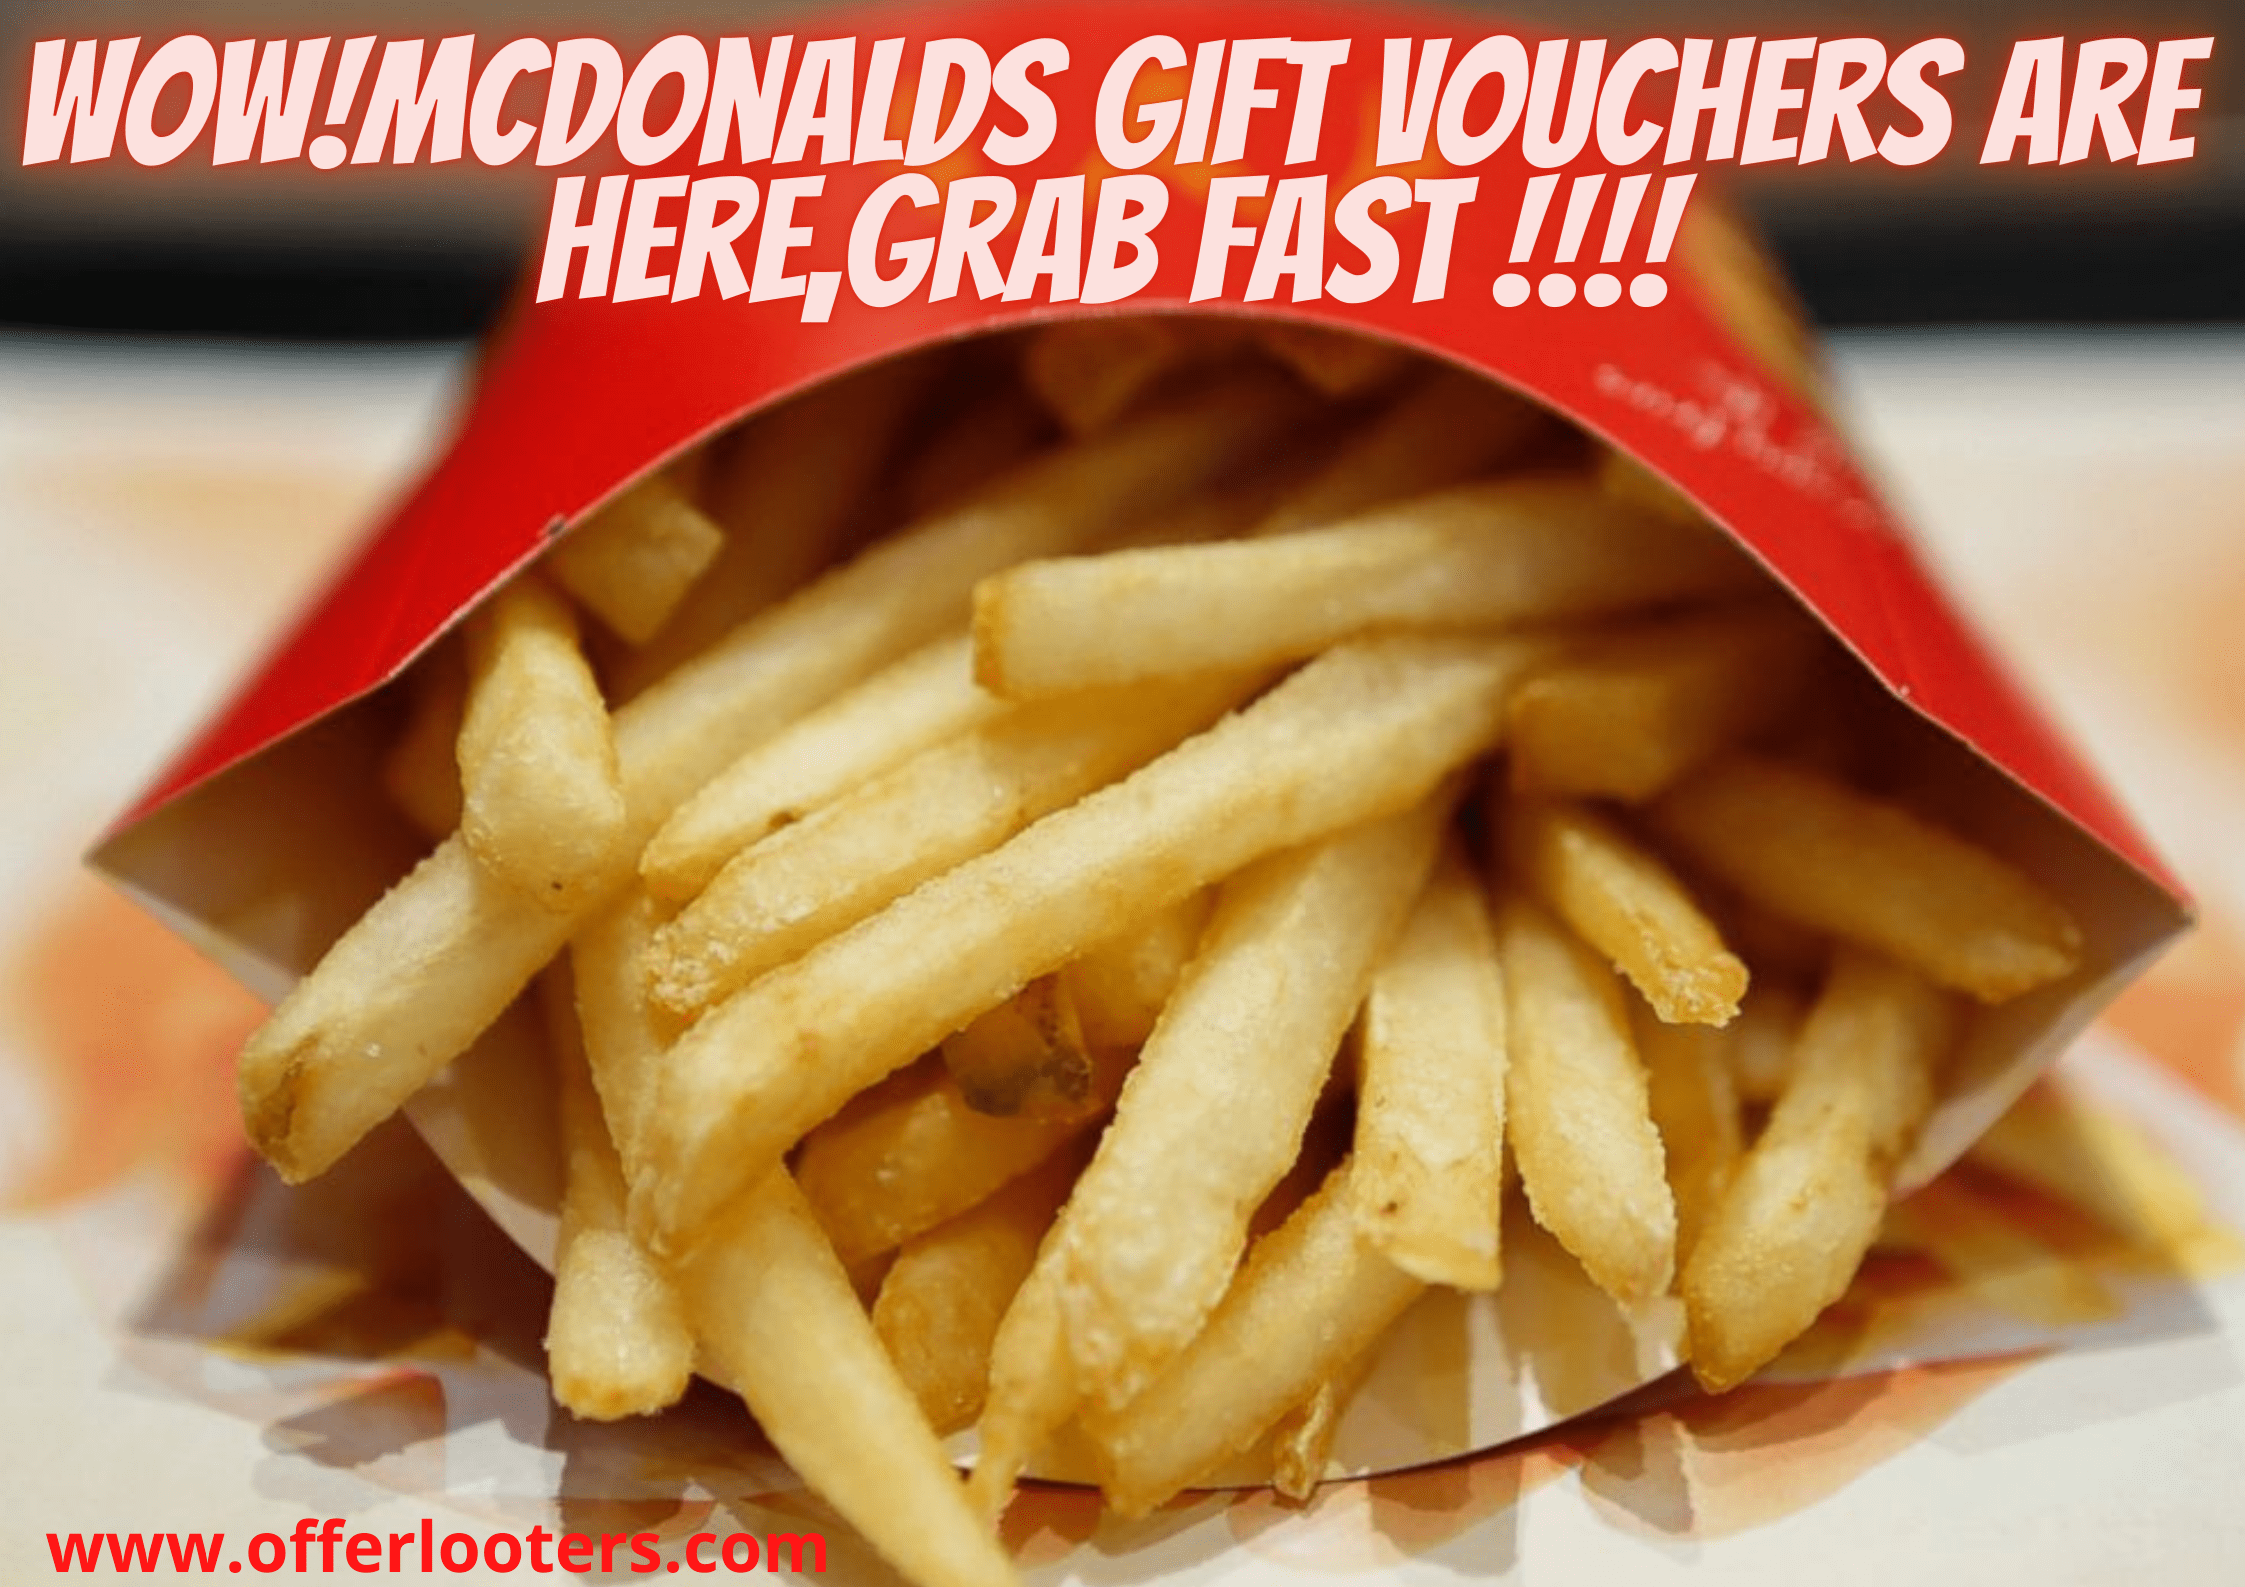 McDonald's Gift vouchers